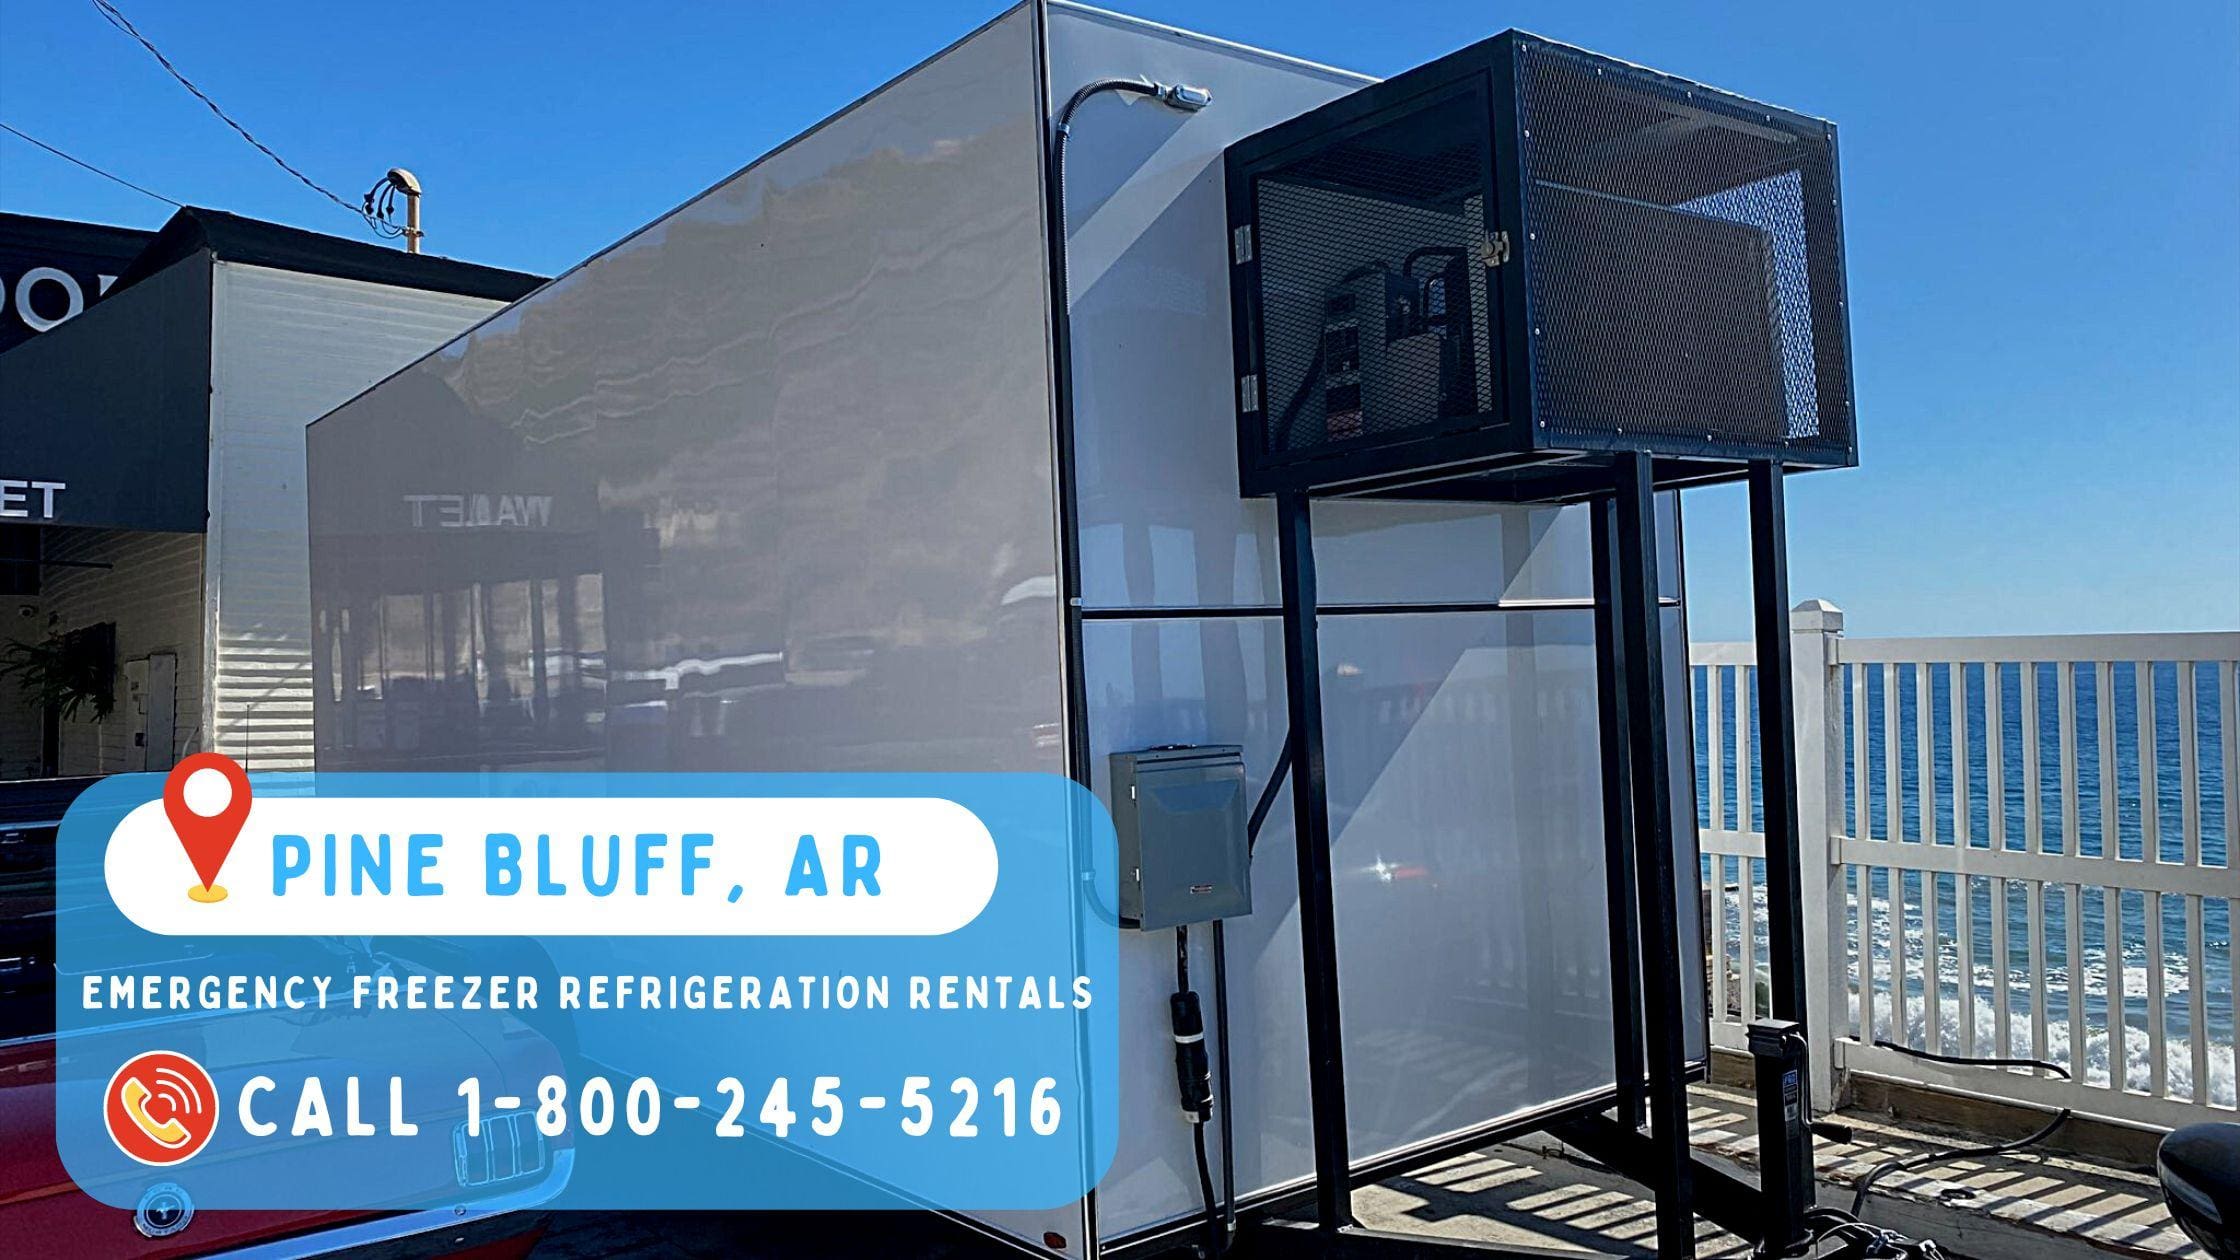 Emergency Freezer Refrigeration Rentals in Pine Bluff, AR